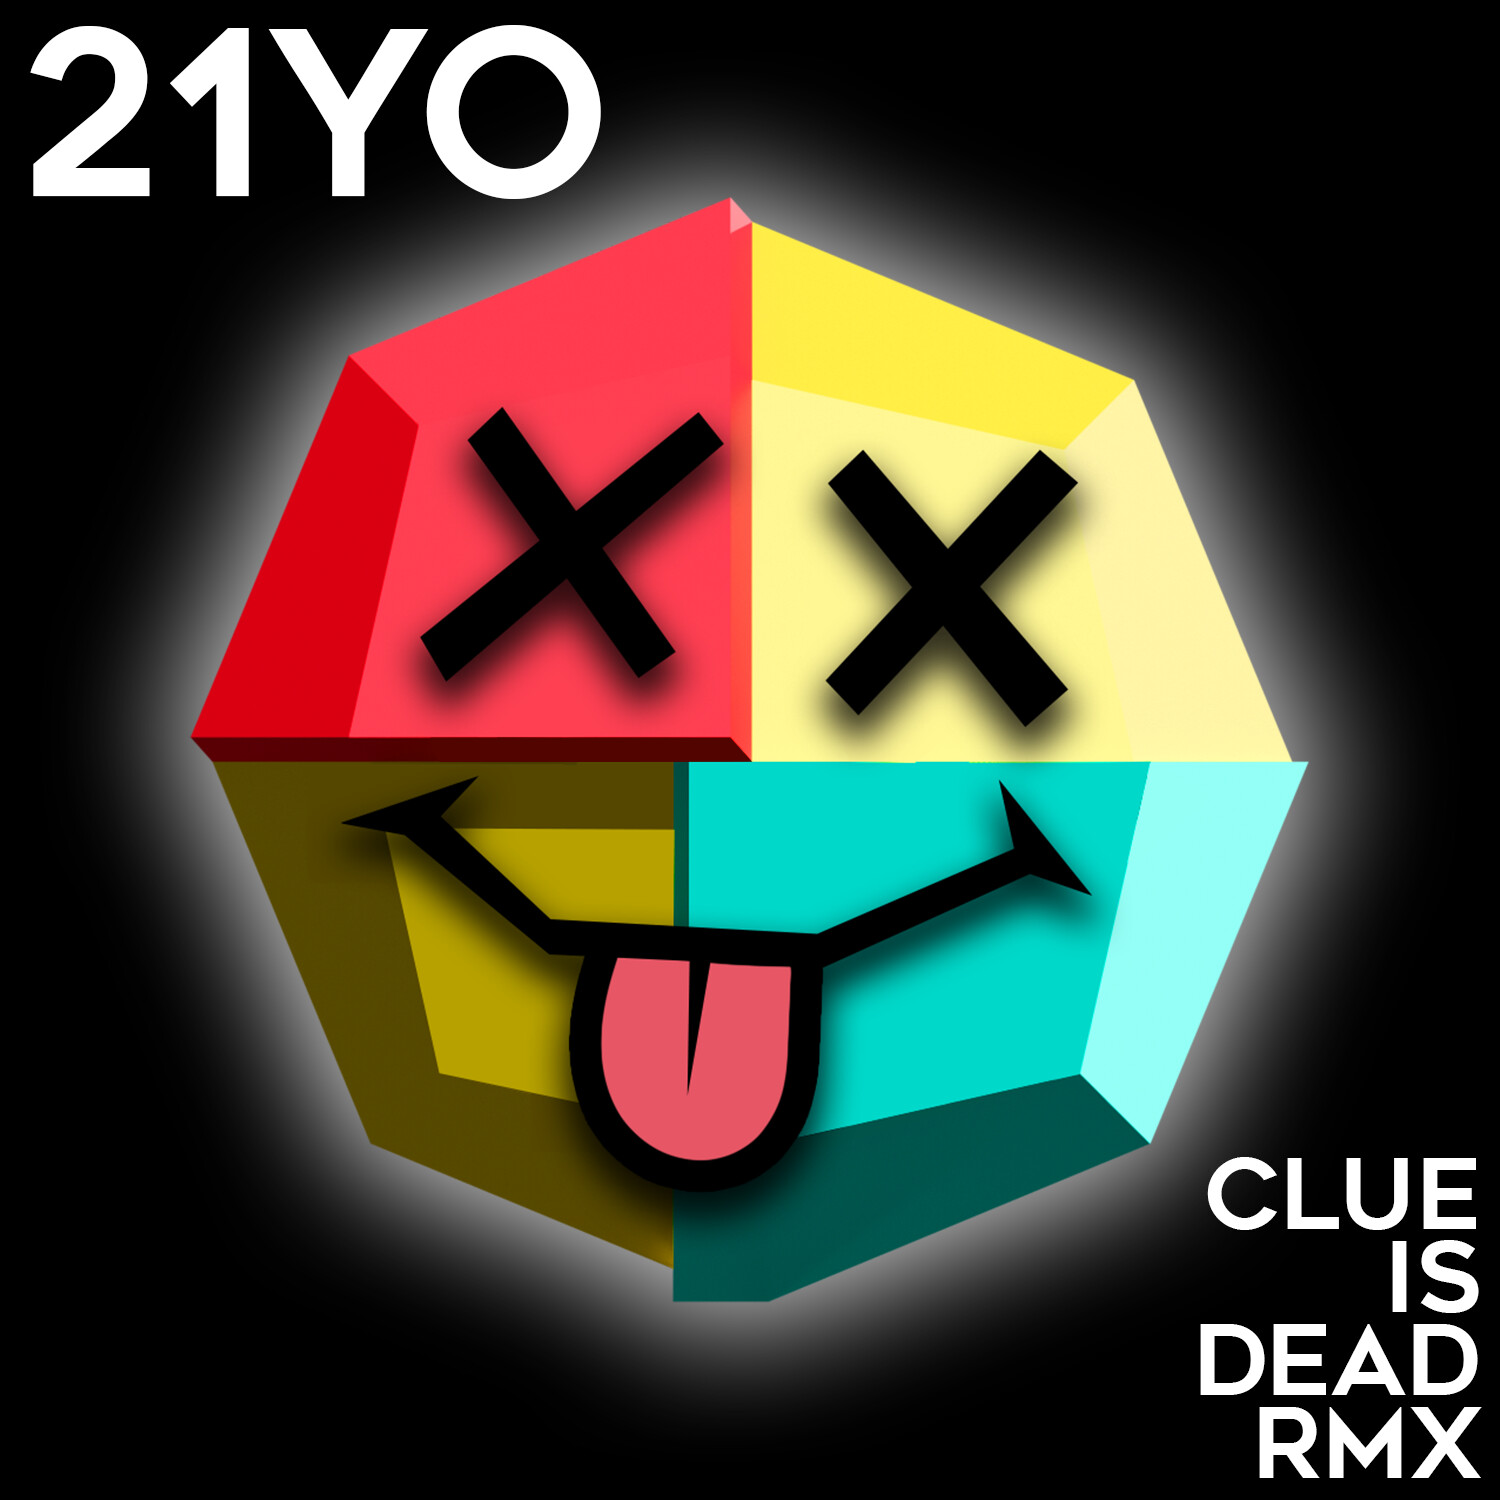 a single: 21YO - CLUE IS DEAD RMX